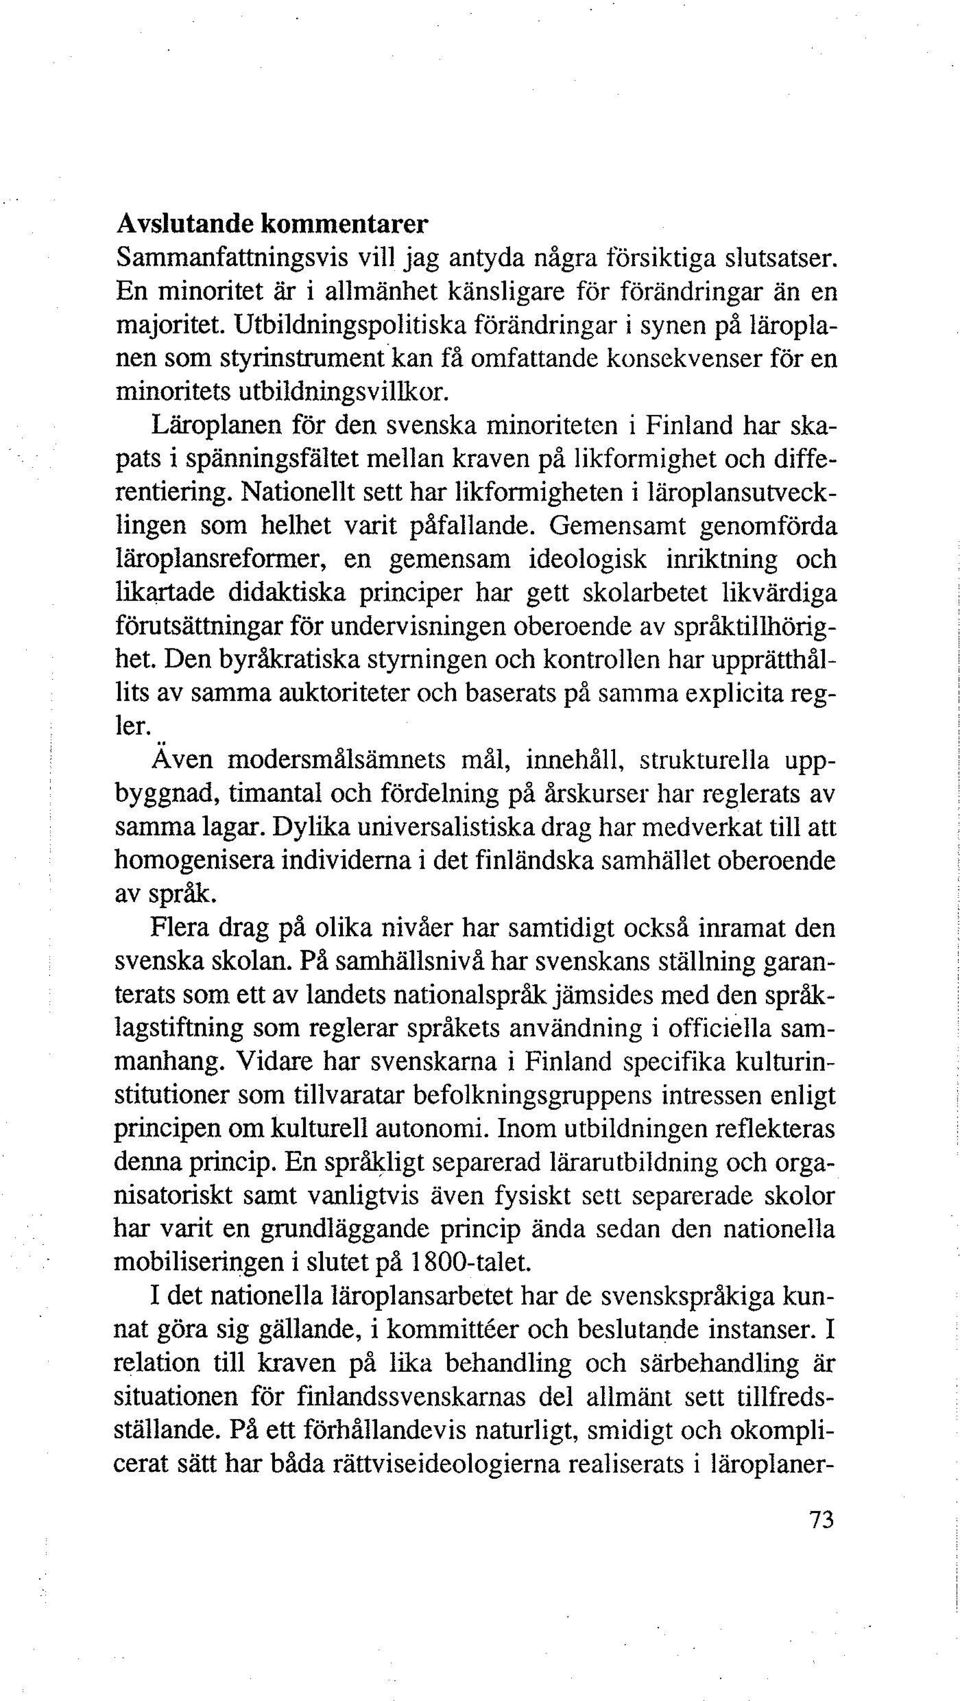 Läroplanen för den svenska minoriteten i Finland har skapats i spänningsfältet mellan kraven på likformighet och differentiering.